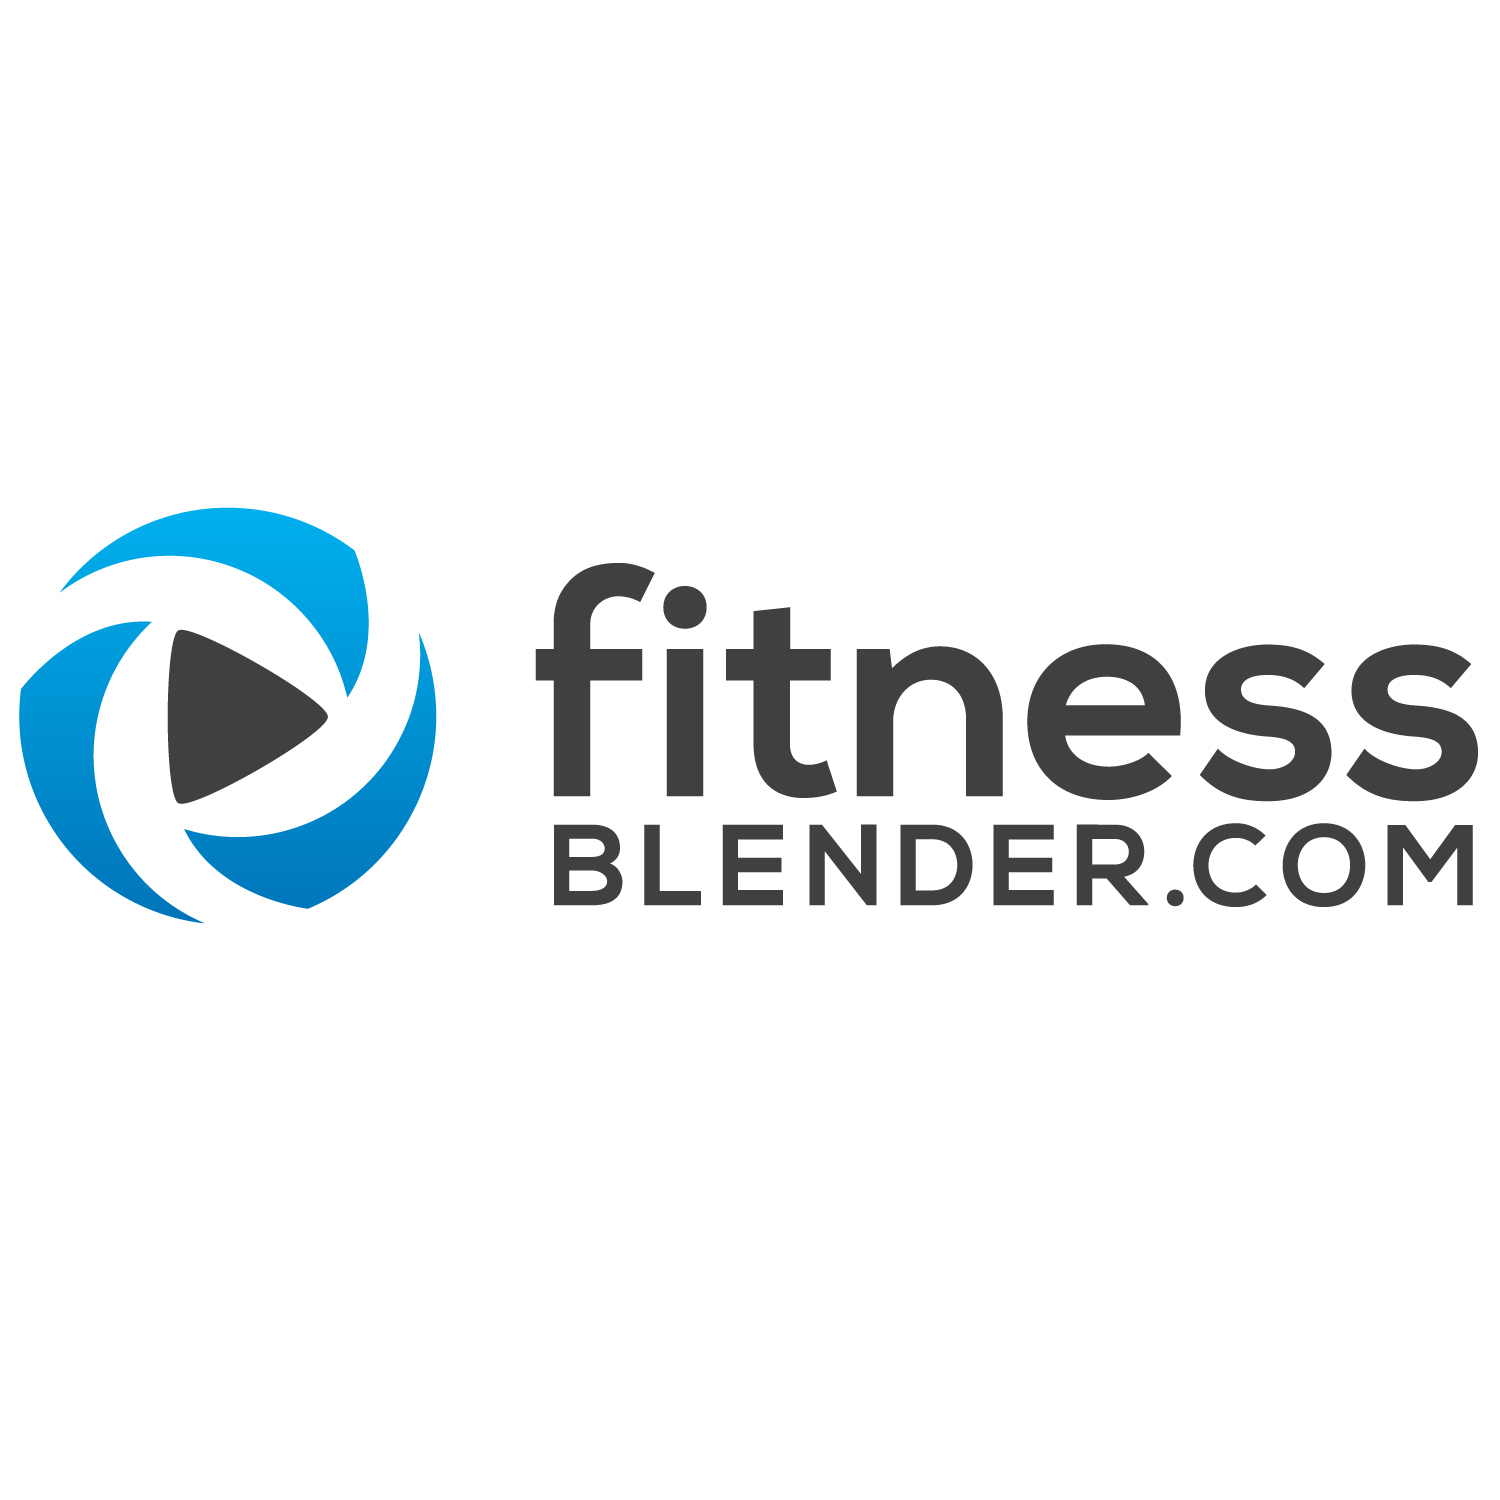 www.fitnessblender.com